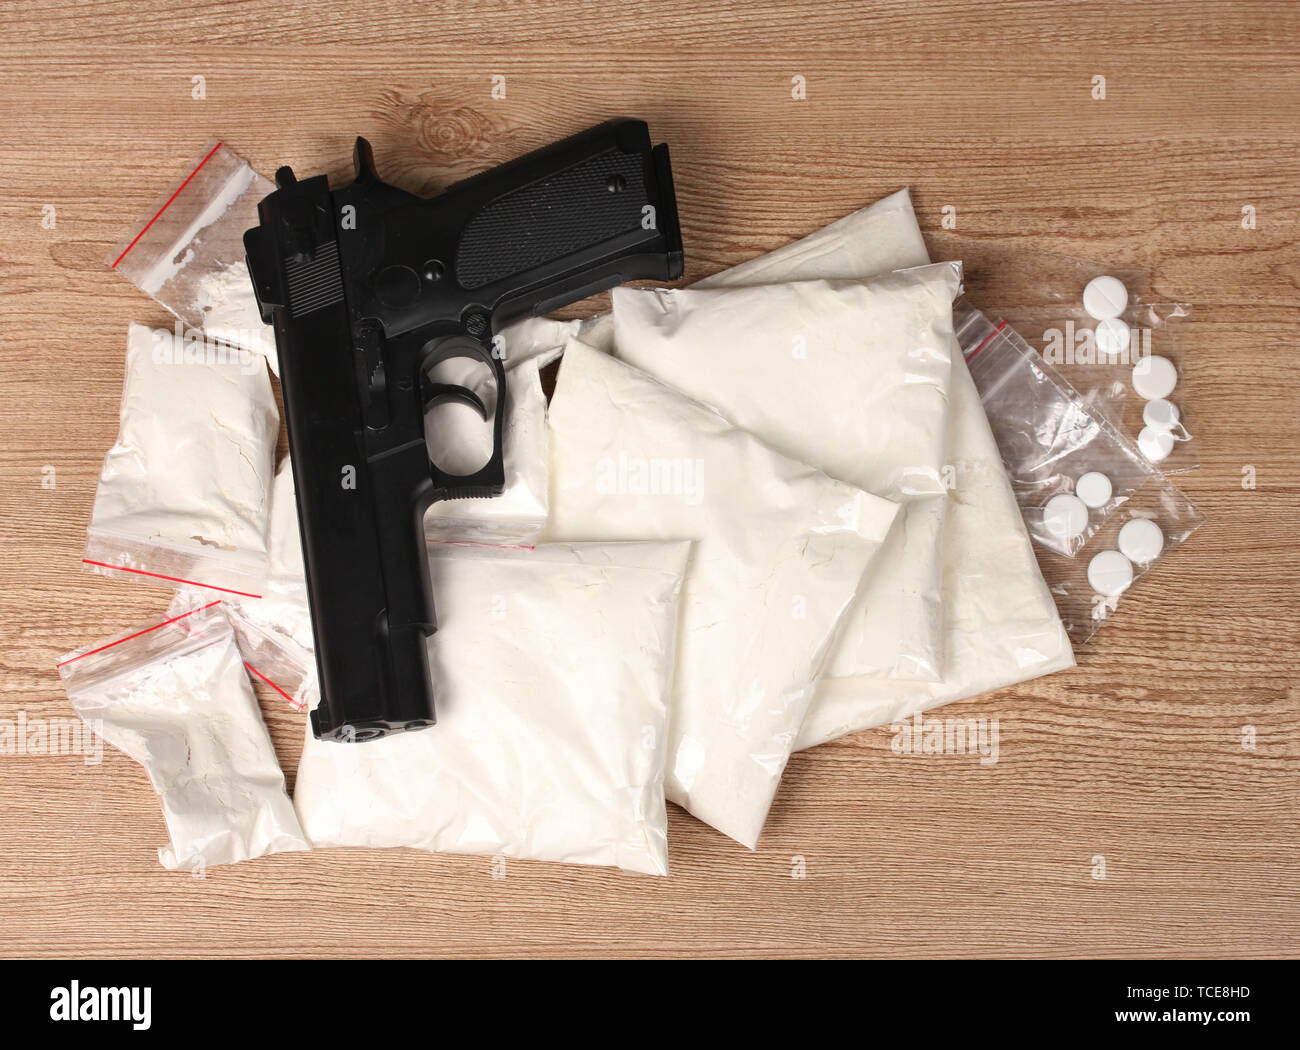 La cocaïne et la marihuana en paquets avec pistolet sur fond de bois Banque D'Images